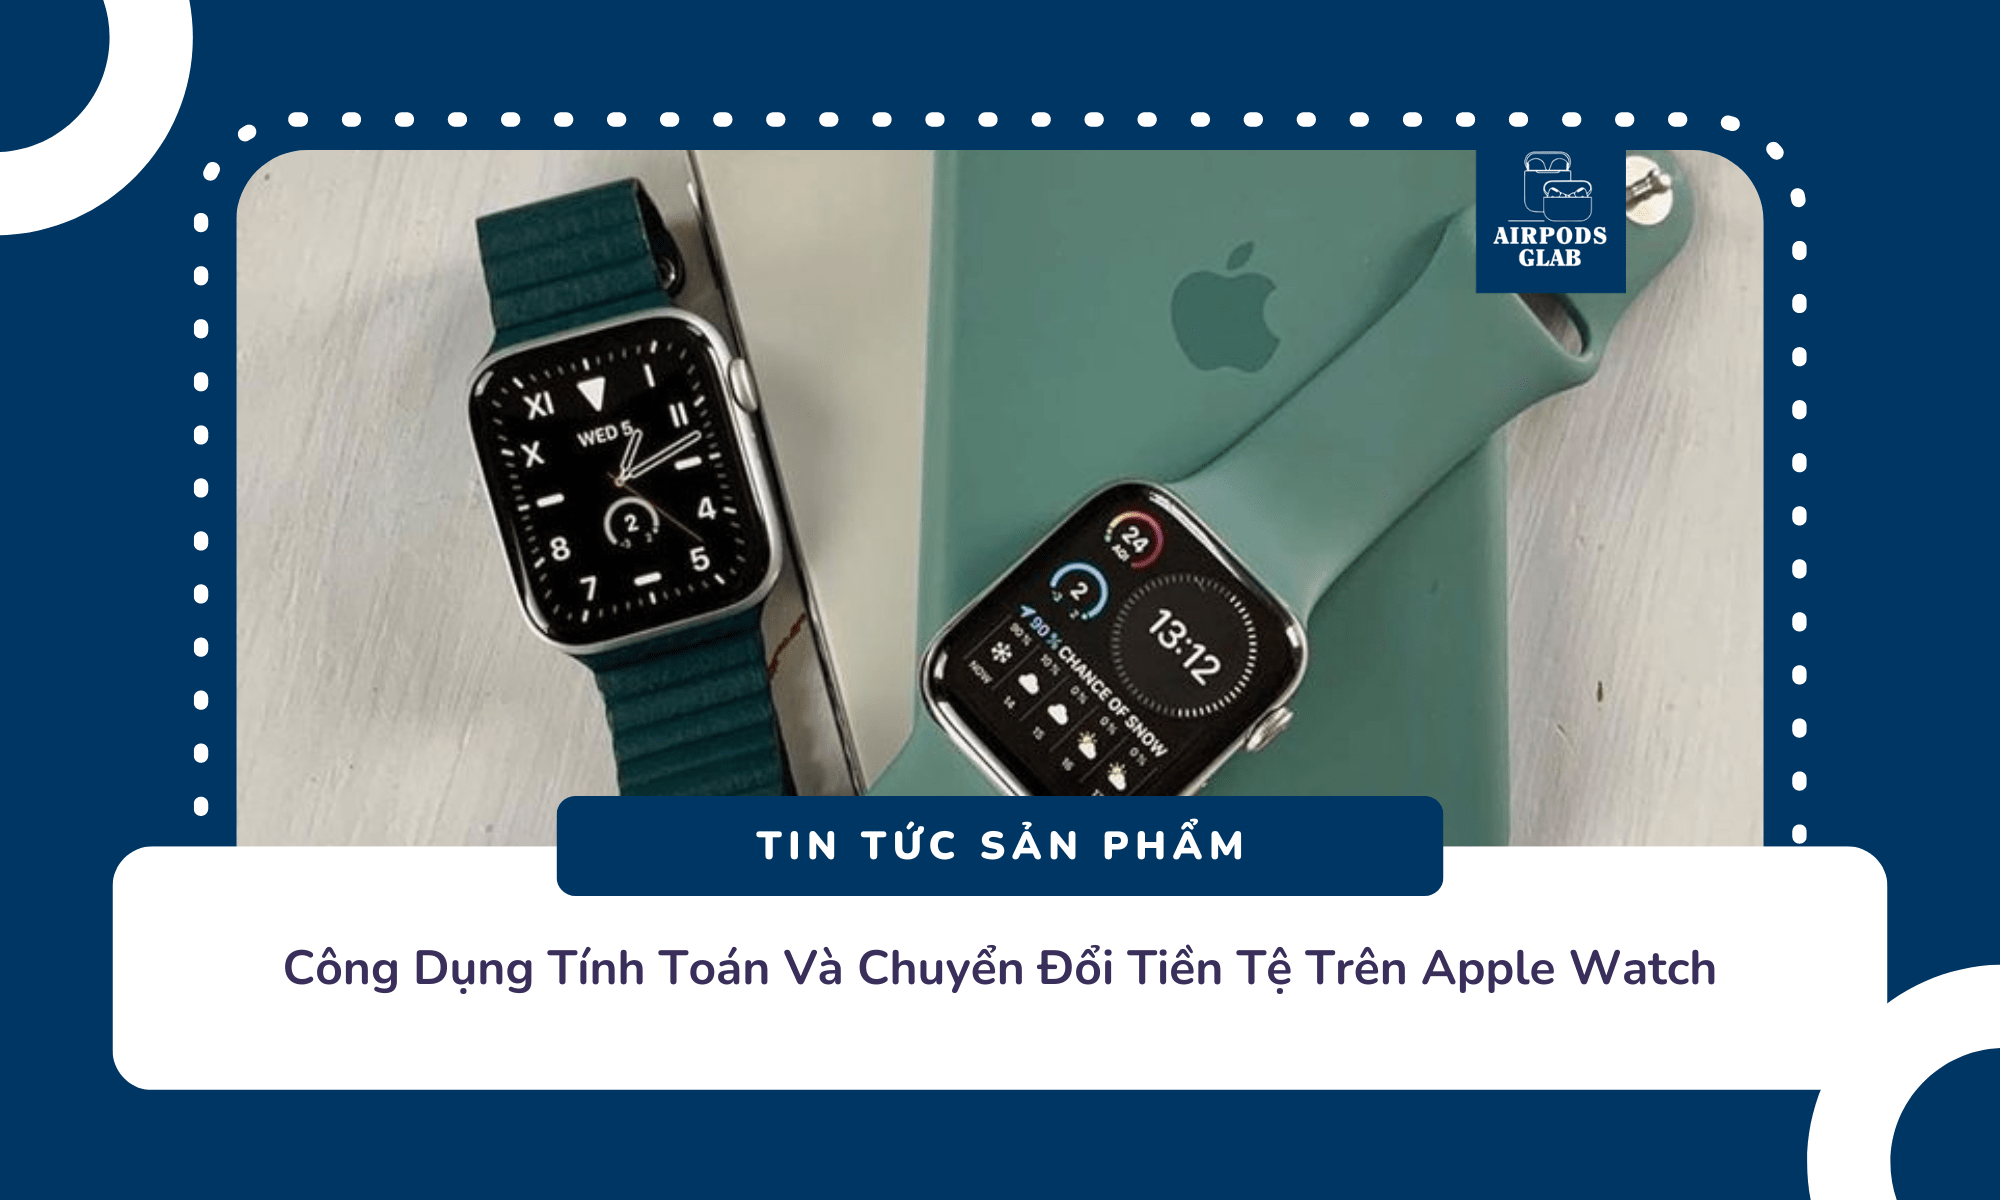 apple-watch-khong-can-ket-noi-iphone